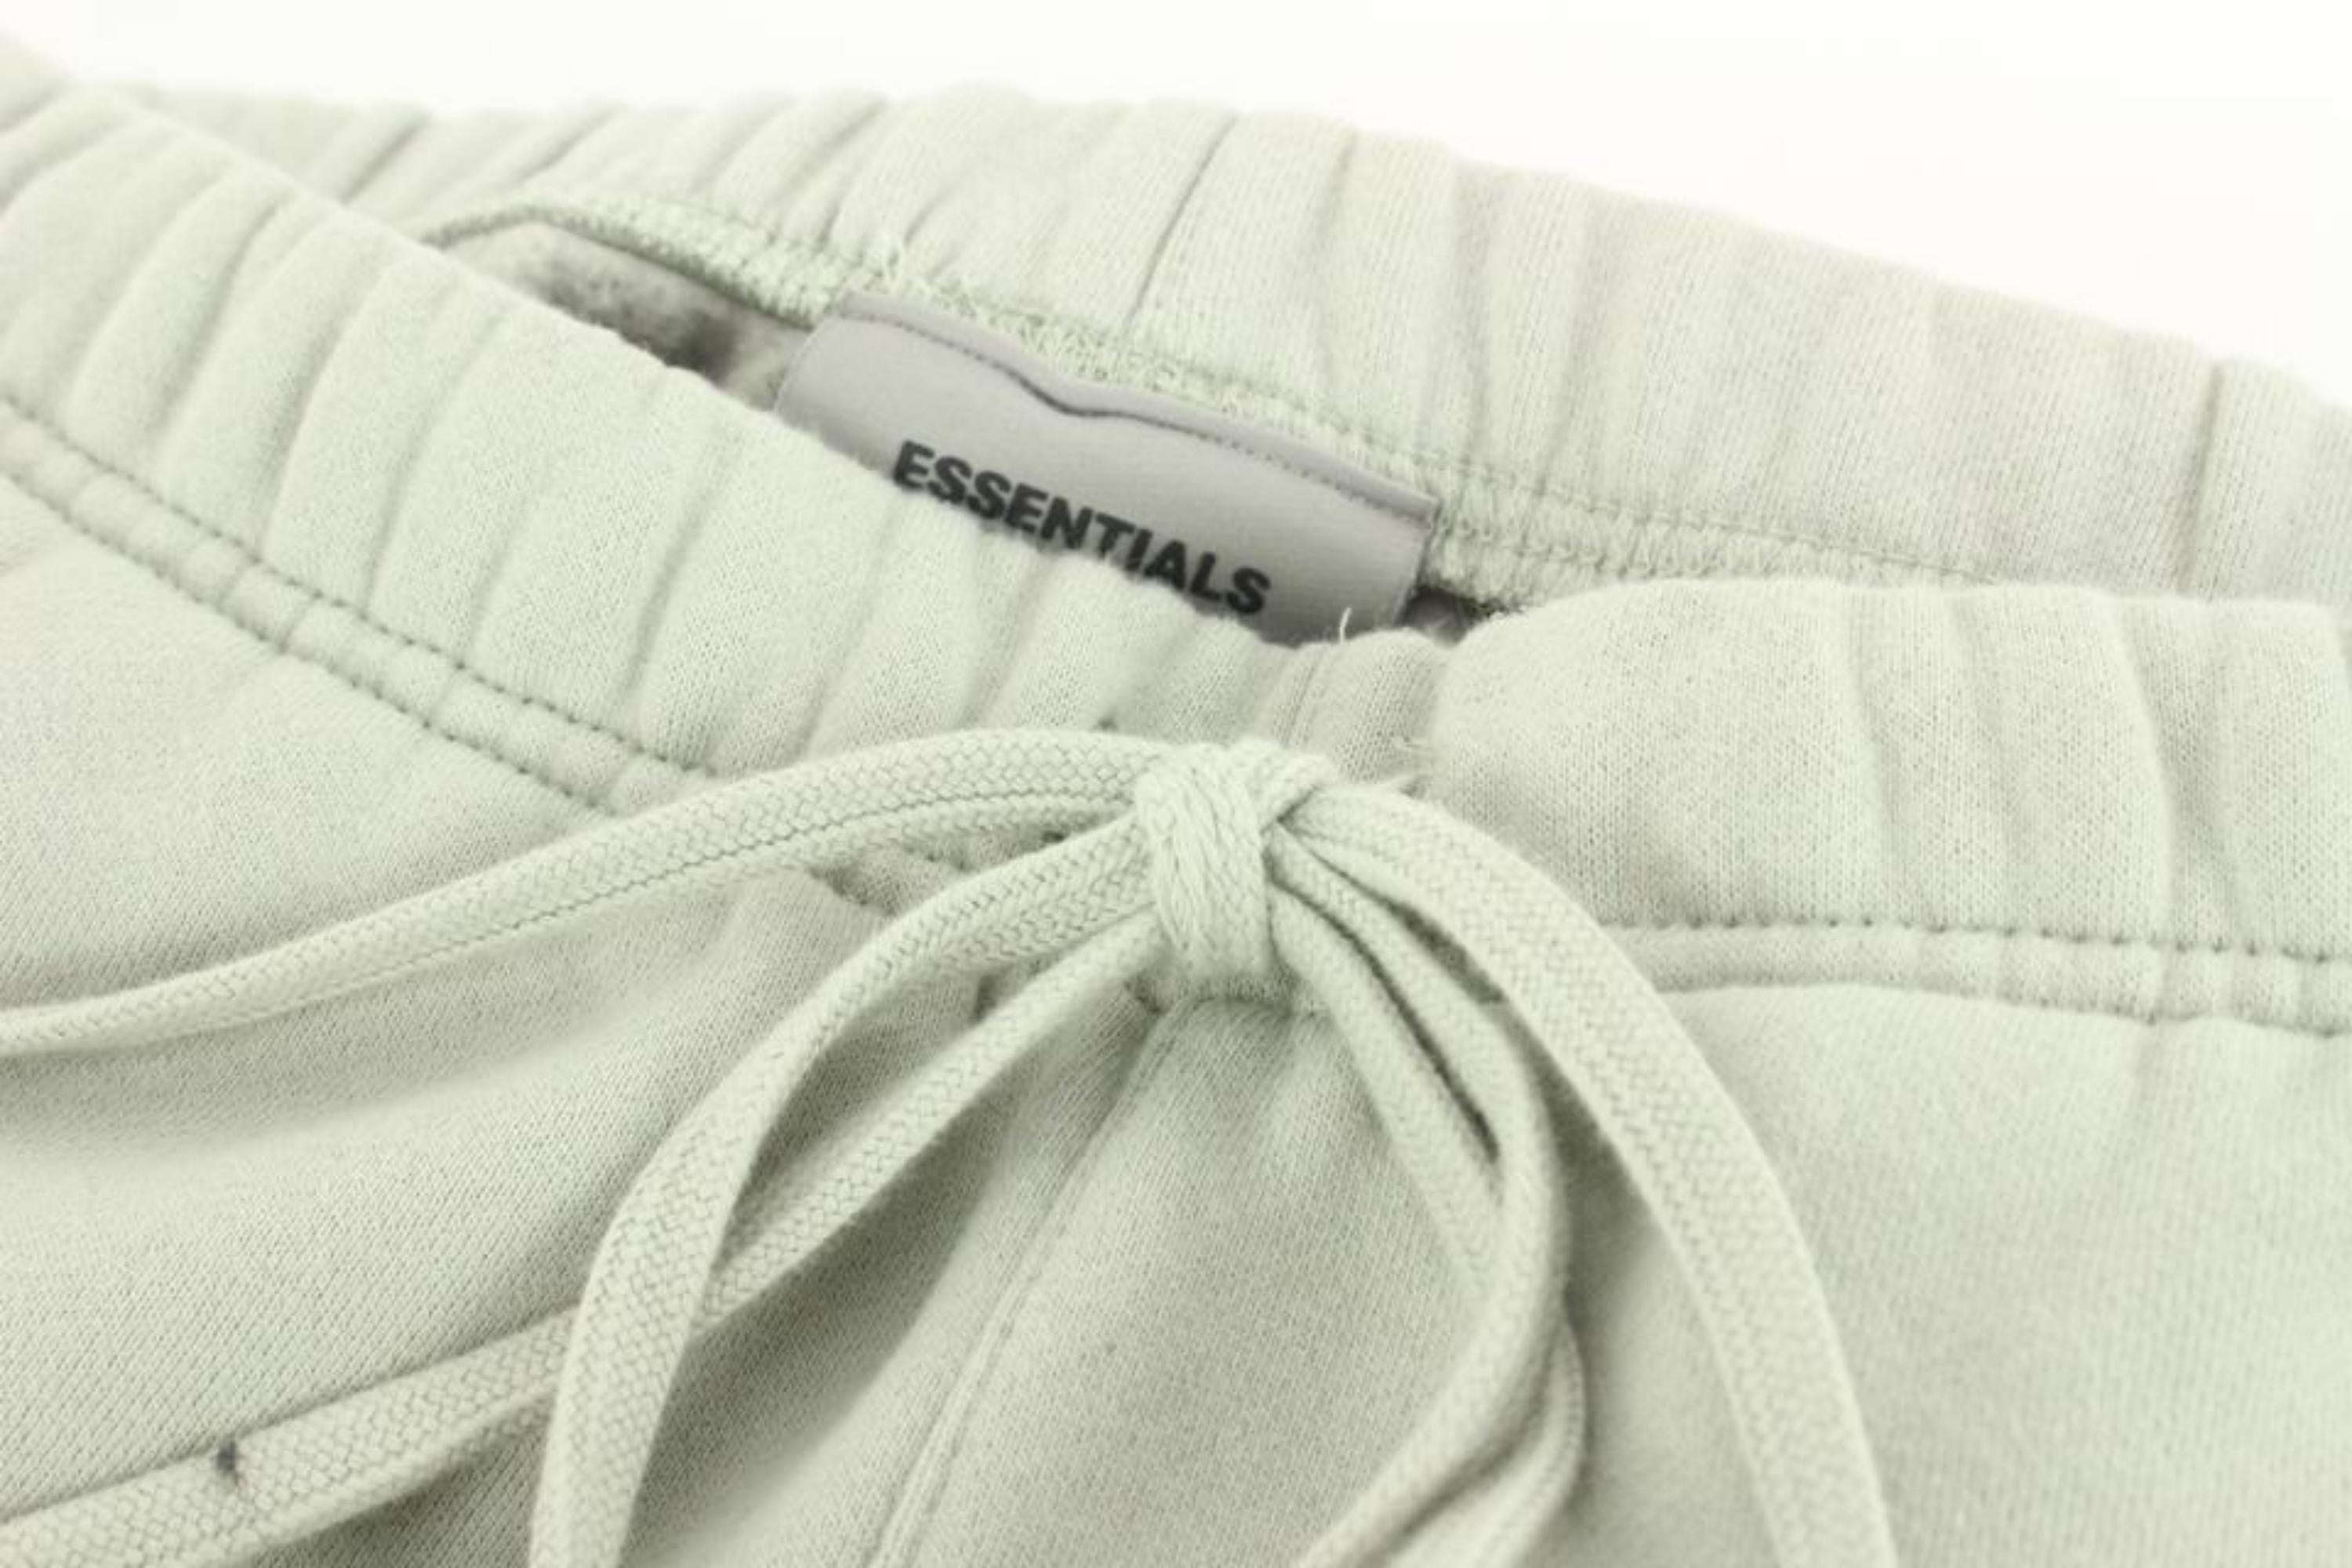 Women's Essentials Men's Small Concrete Grey Sweatpants 18es712s For Sale